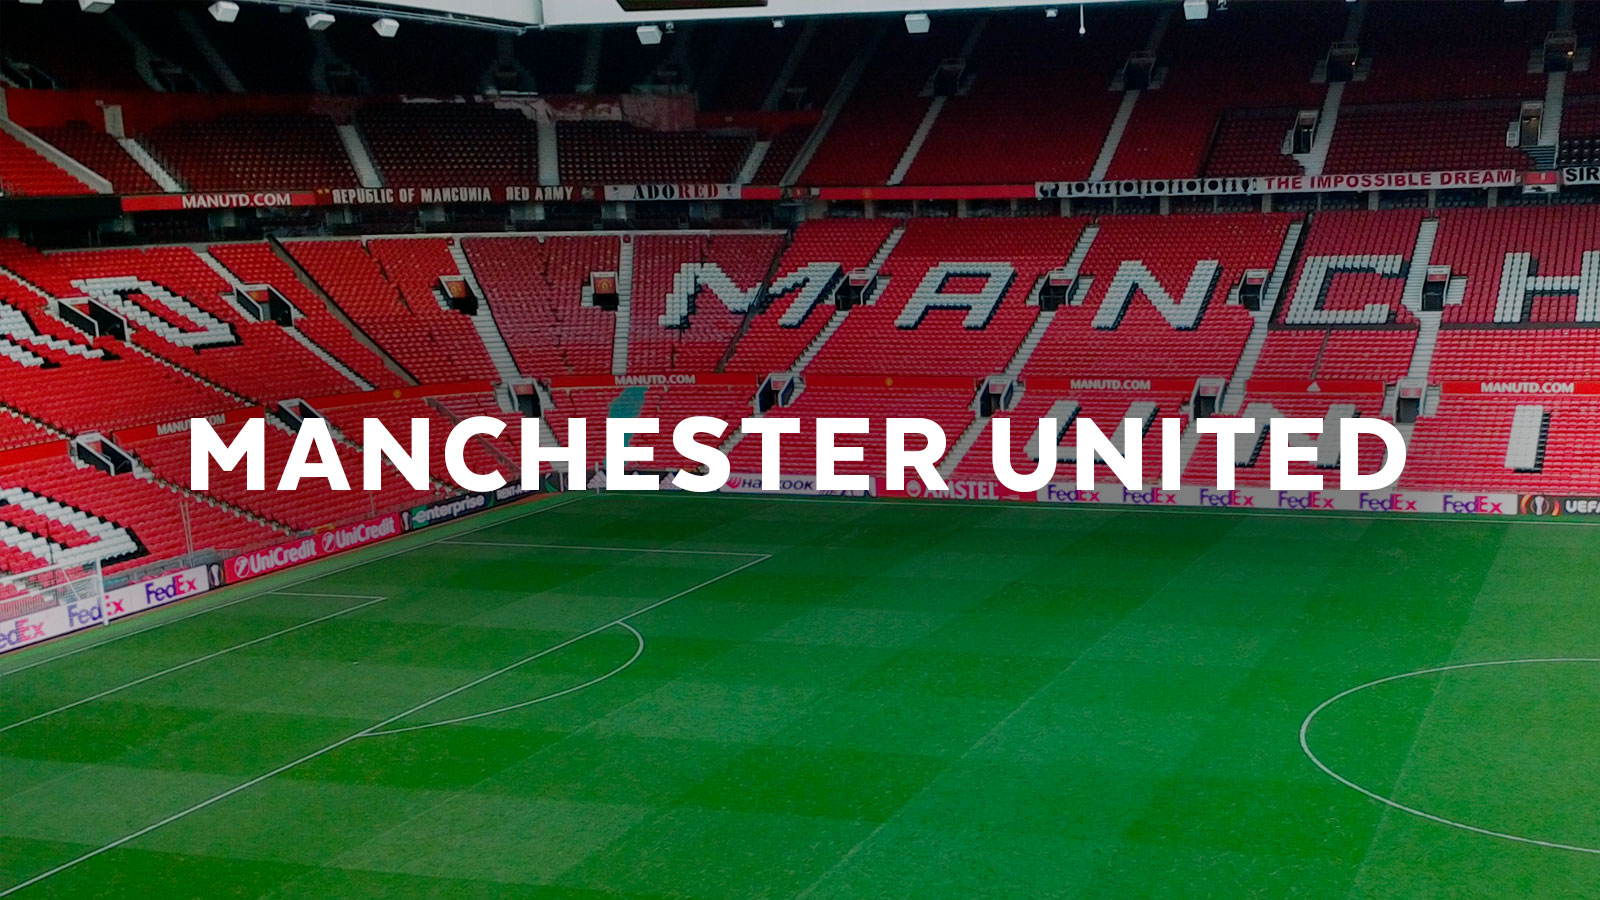 OMM-Technology-Manchester-United.jpg